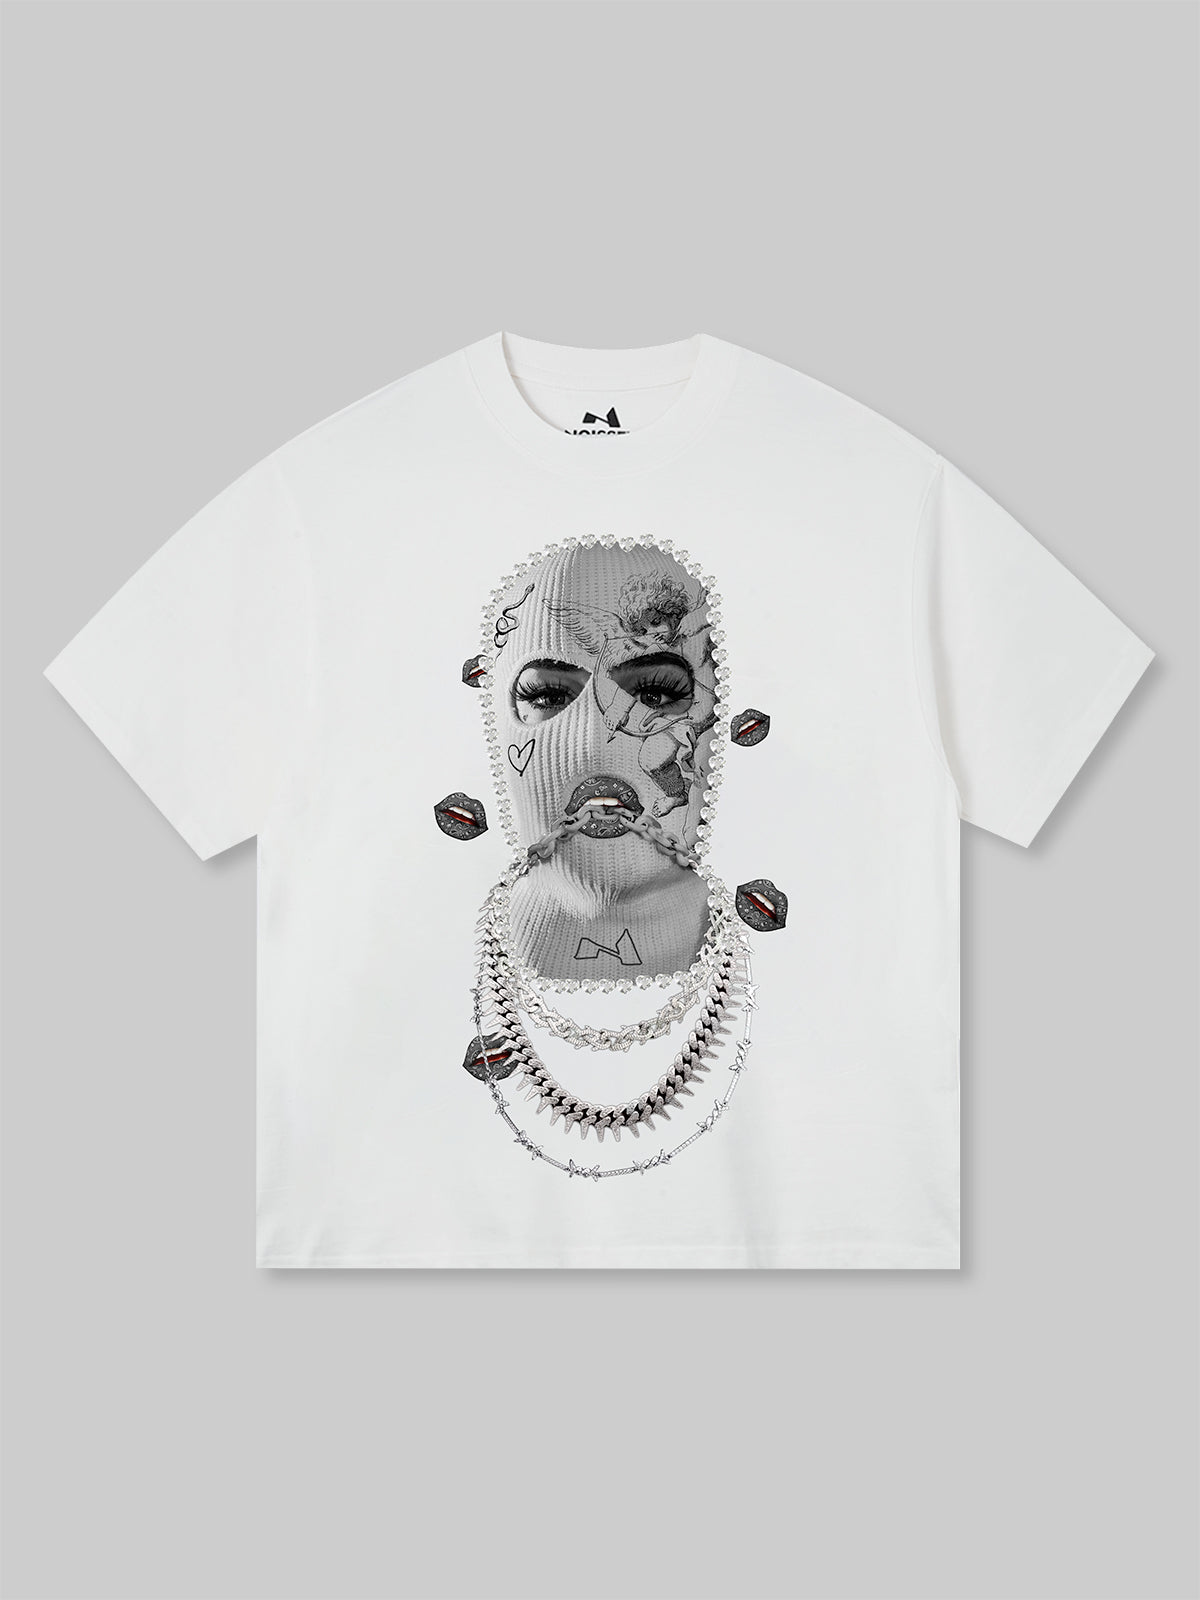 BOUNCE BACK© マスクネックレスプリントTシャツ